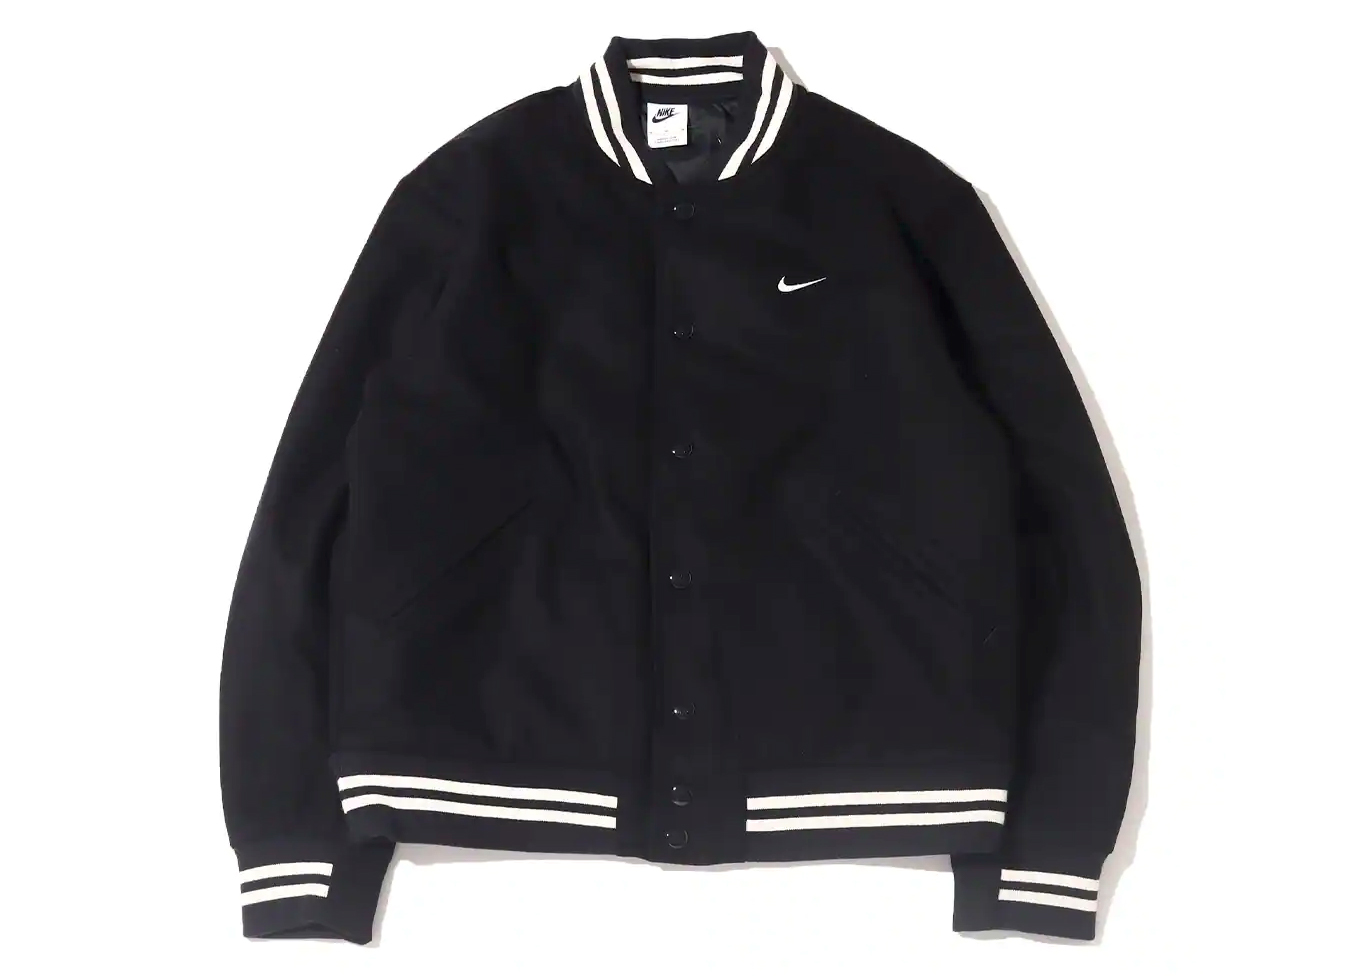 Nike Sportswear Authentics Varsity Jacket (Asia Sizing) Black/White